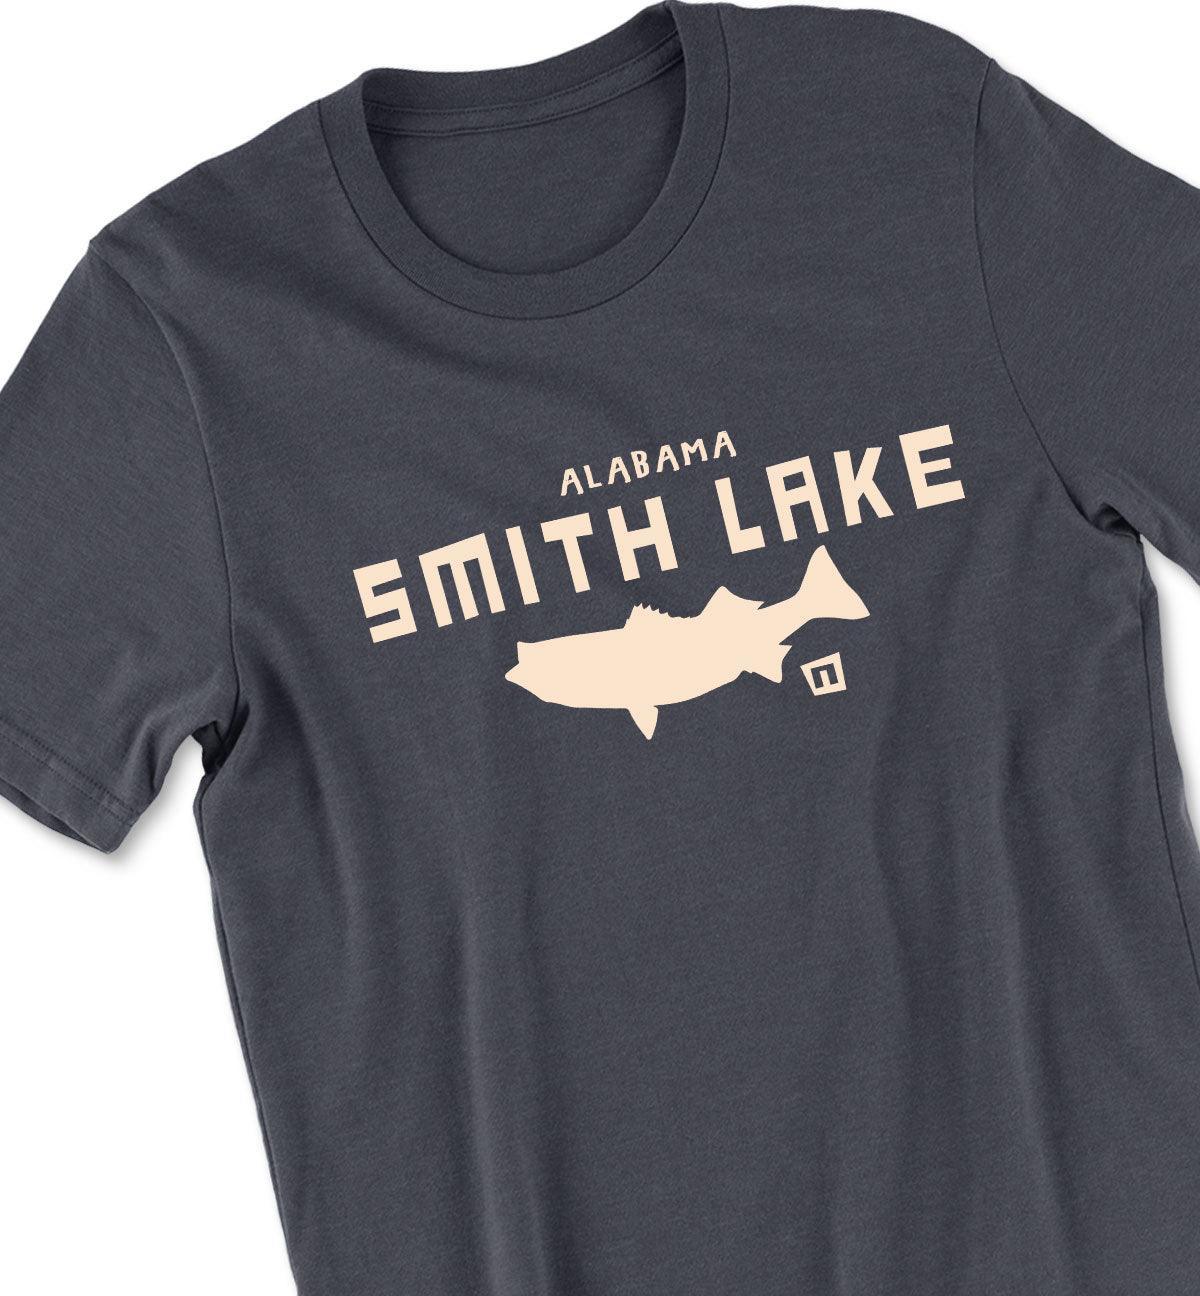 Smith Lake Striper Tshirt - Smith Lake Tshirt - NOGGINHED